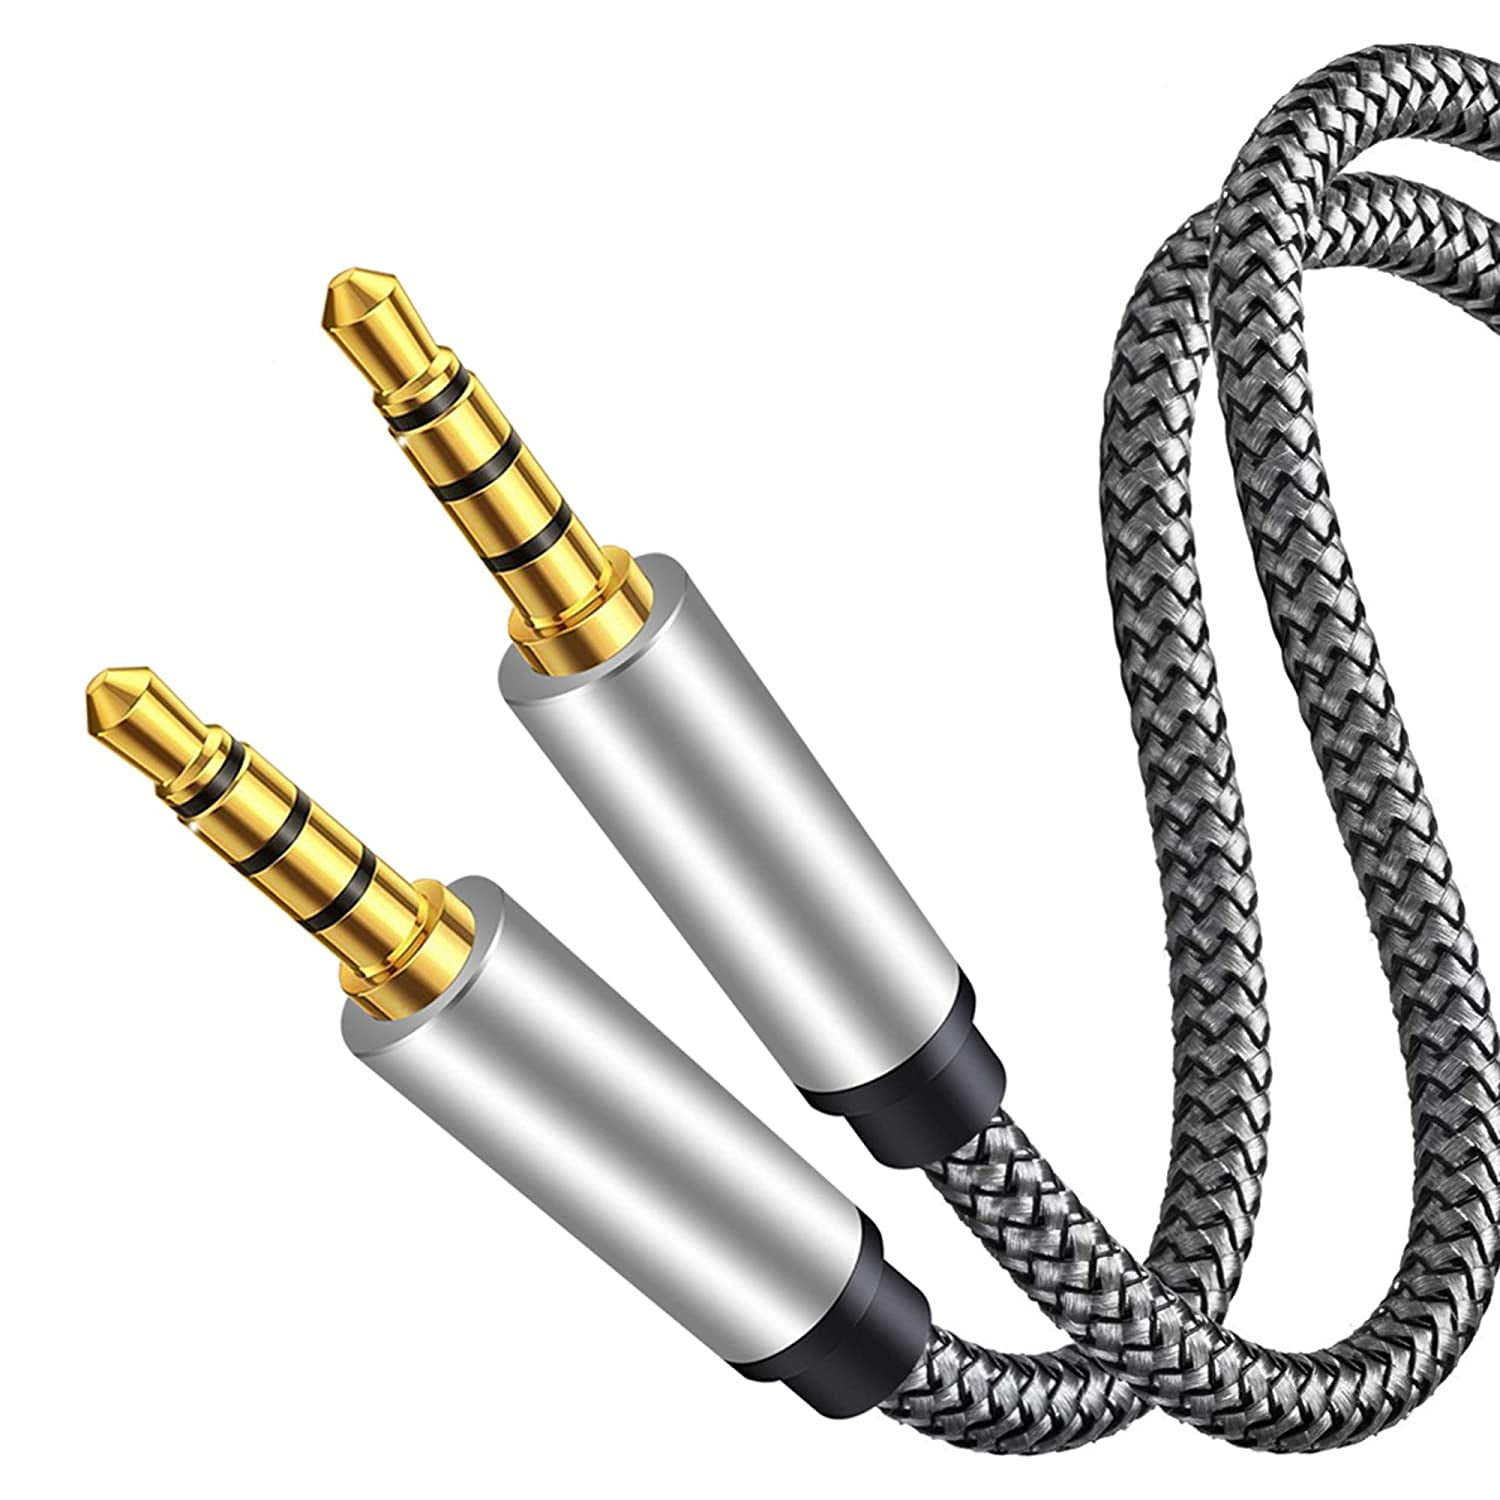 Avizar Câble Audio Auxiliaire double jack 3,5mm